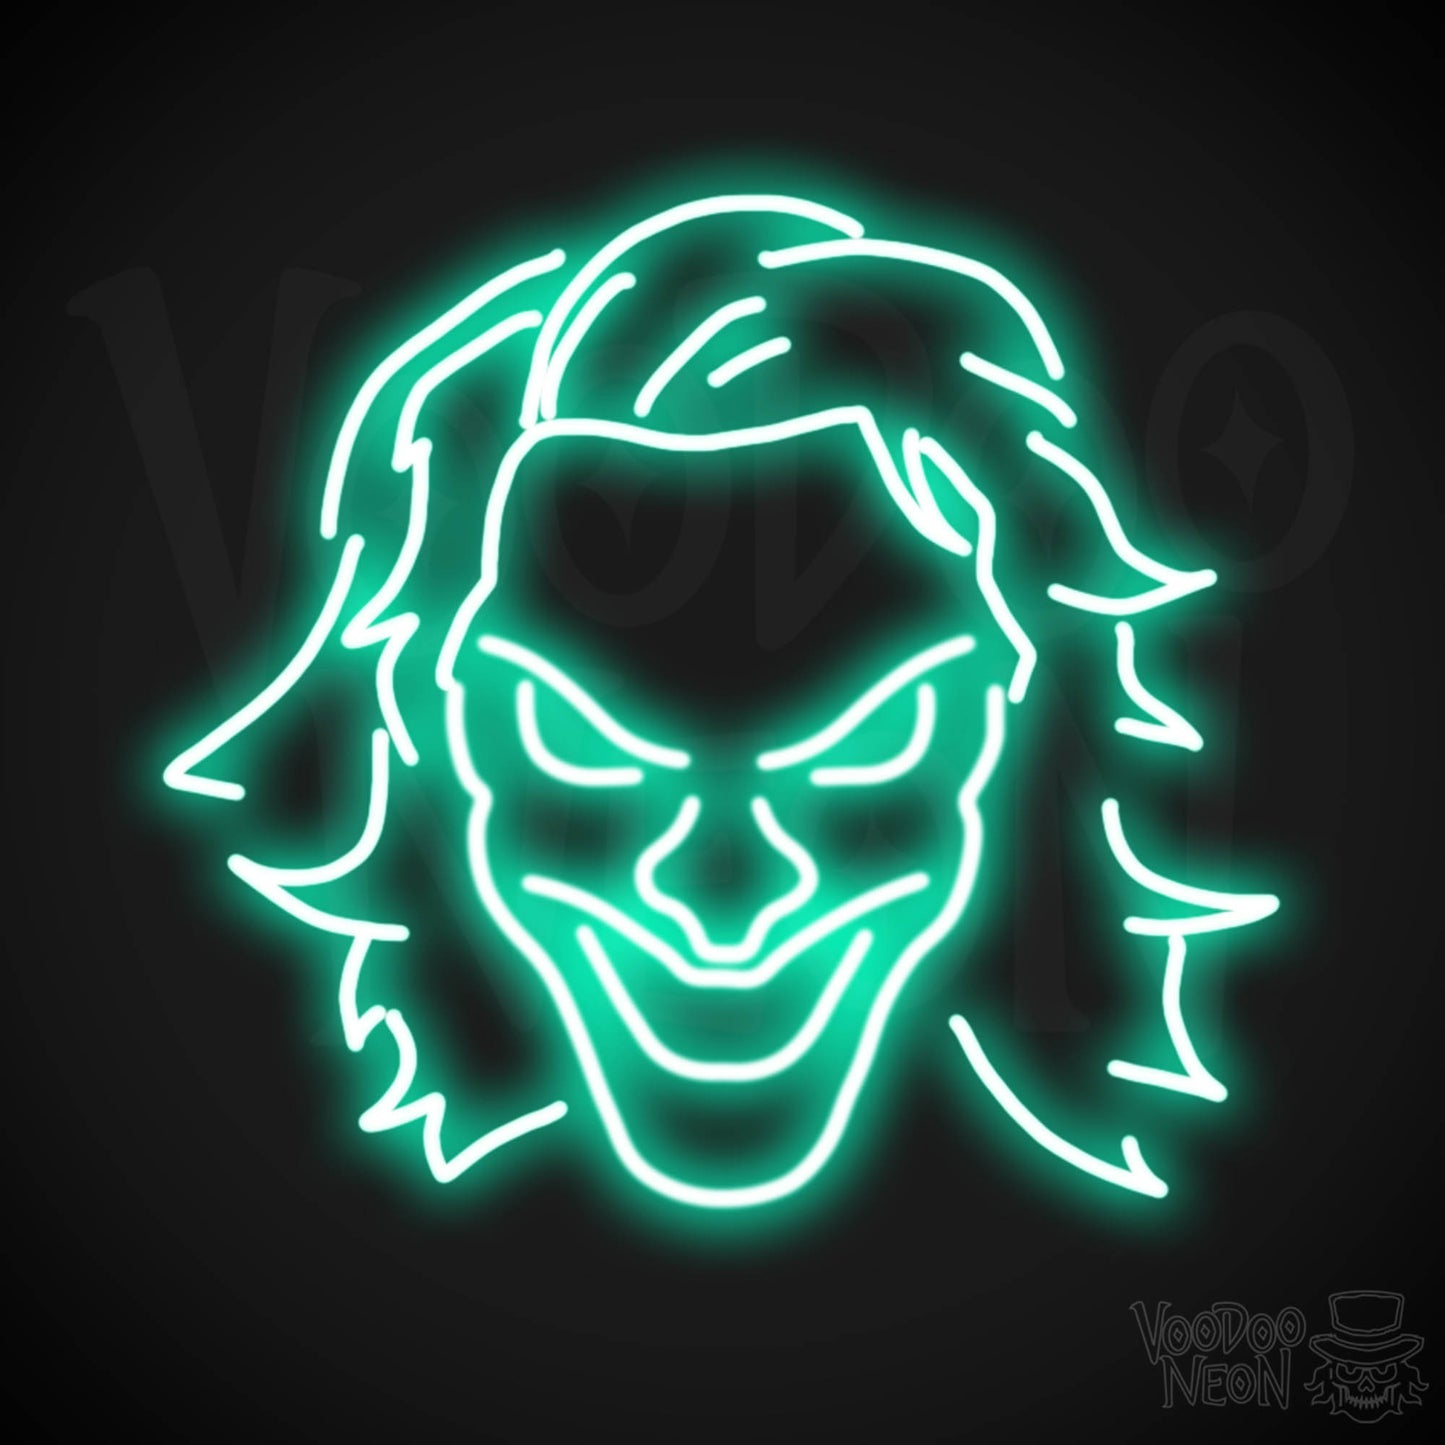 Joker Neon Sign - Neon Joker Sign - Joker LED Wall Art - Color Light Green